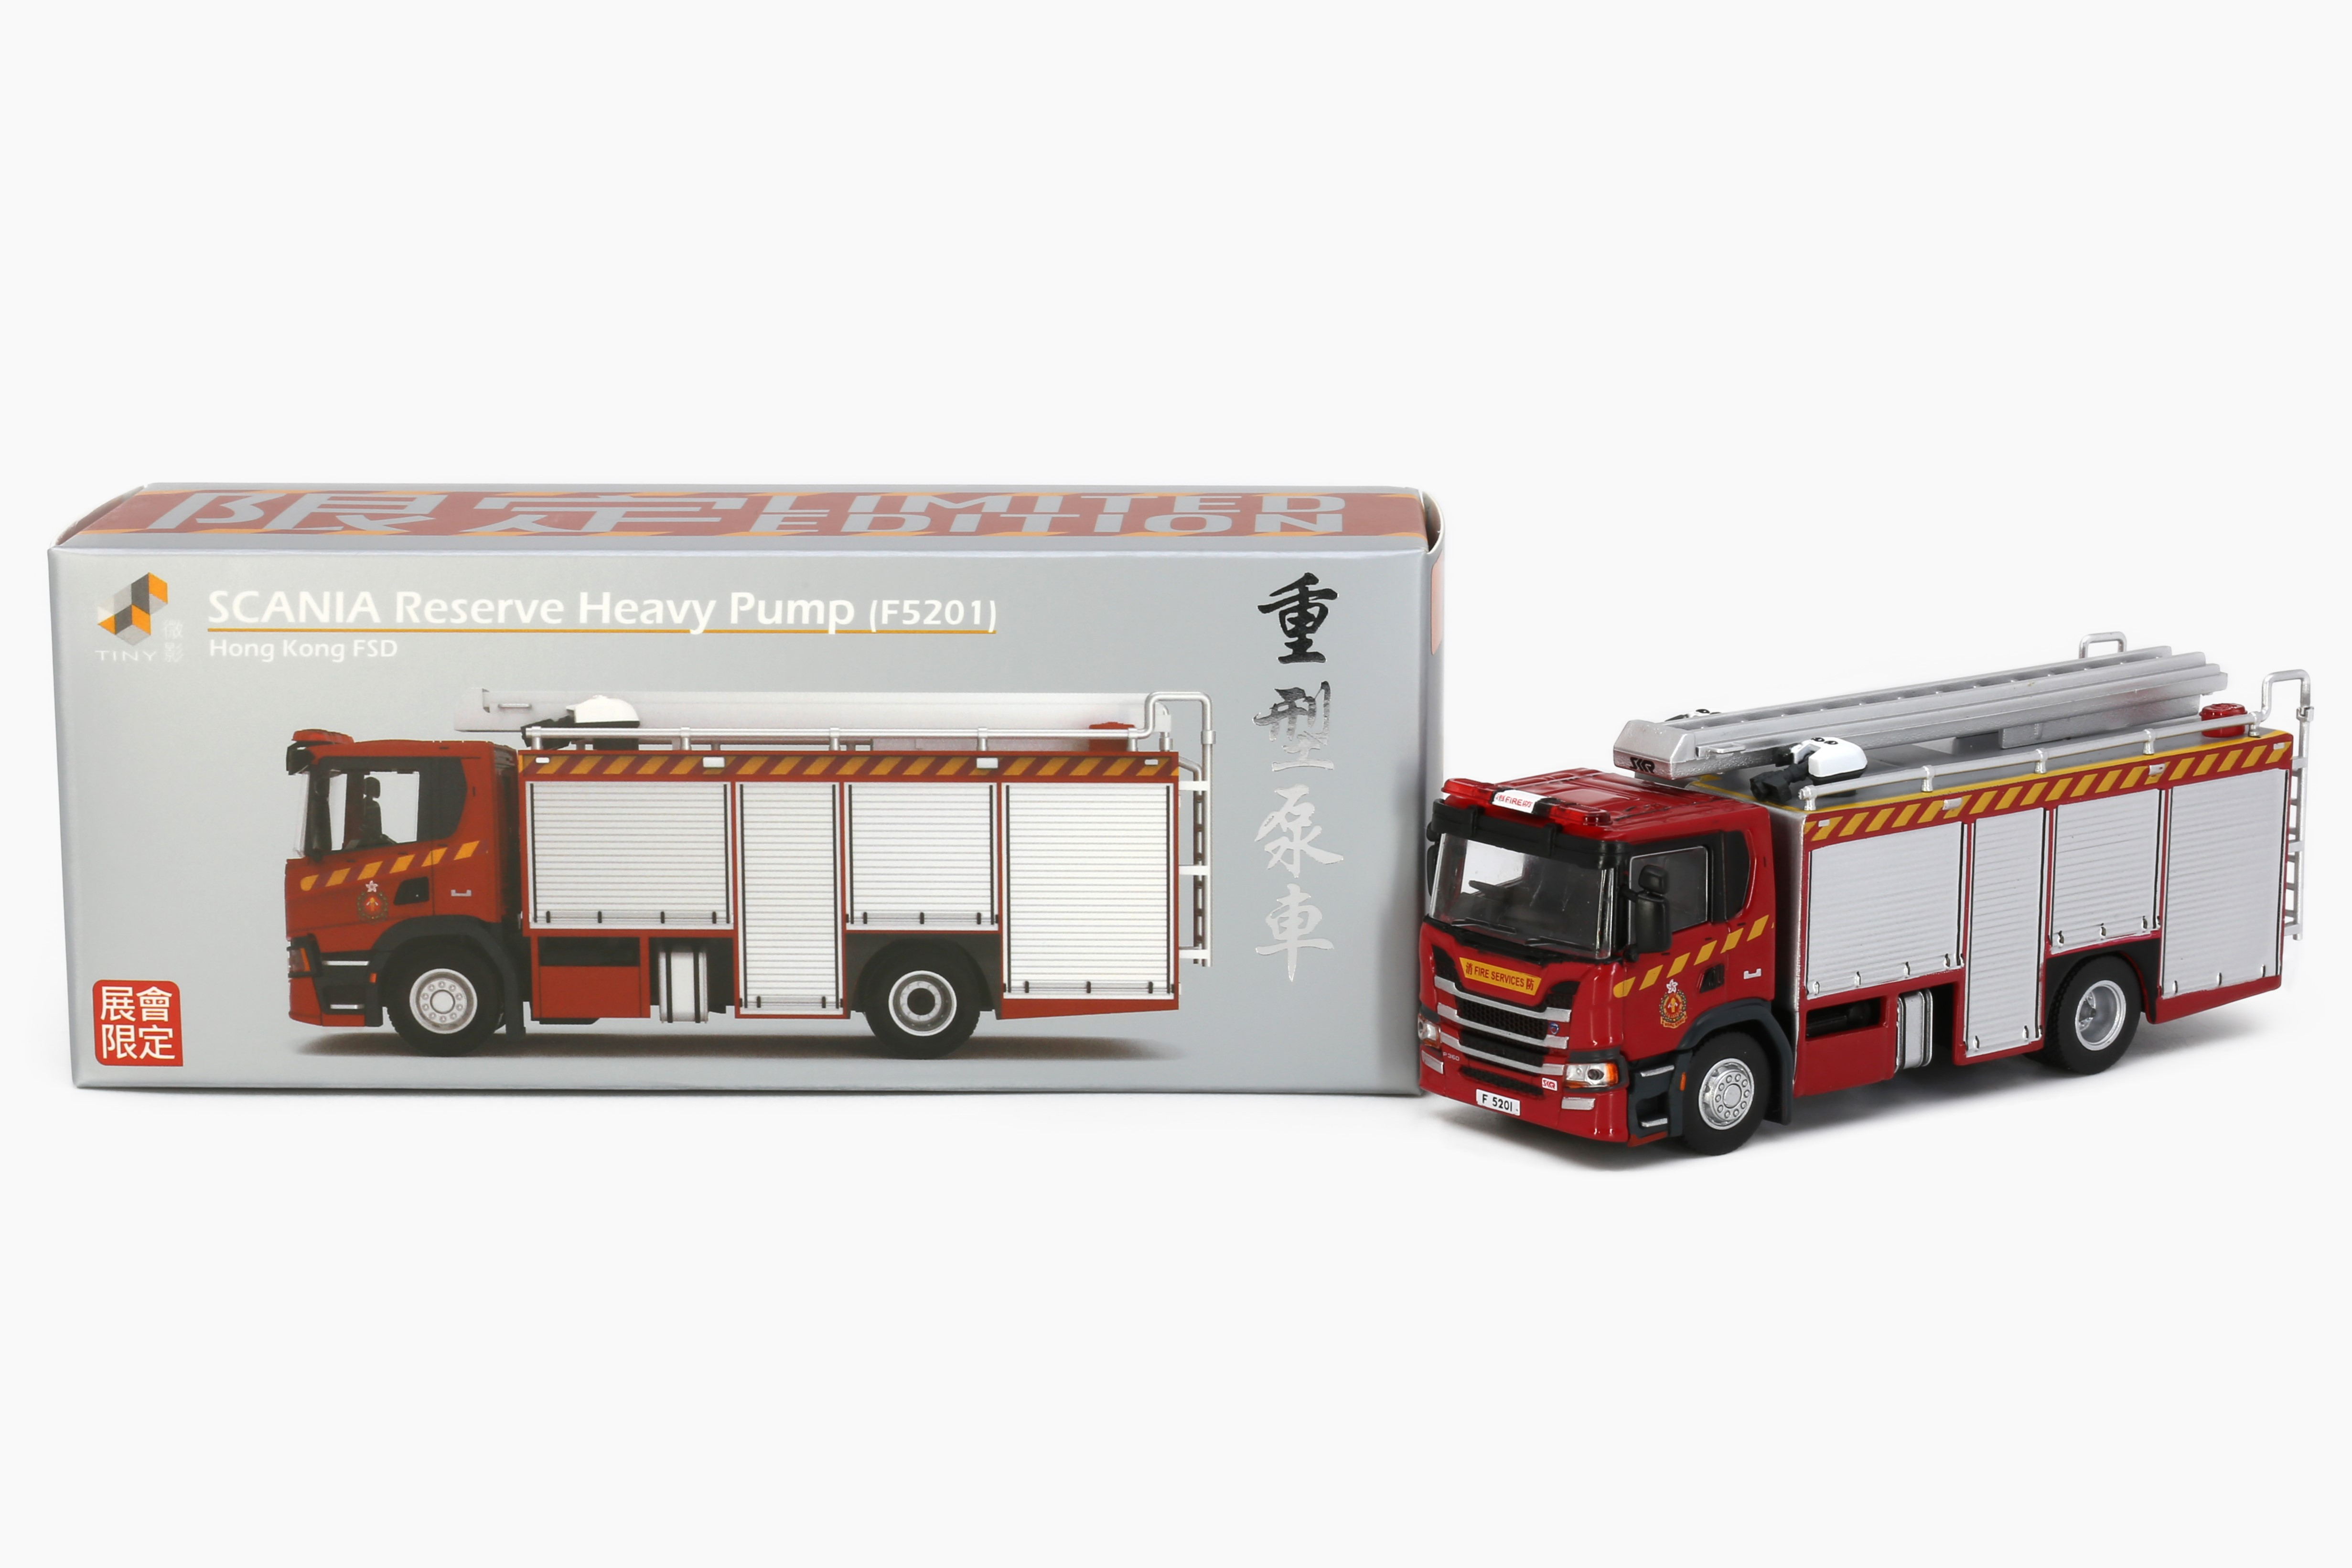 Tiny 城市 合金車仔-SCANIA 消防處重型泵車 (F5201) (新車版)